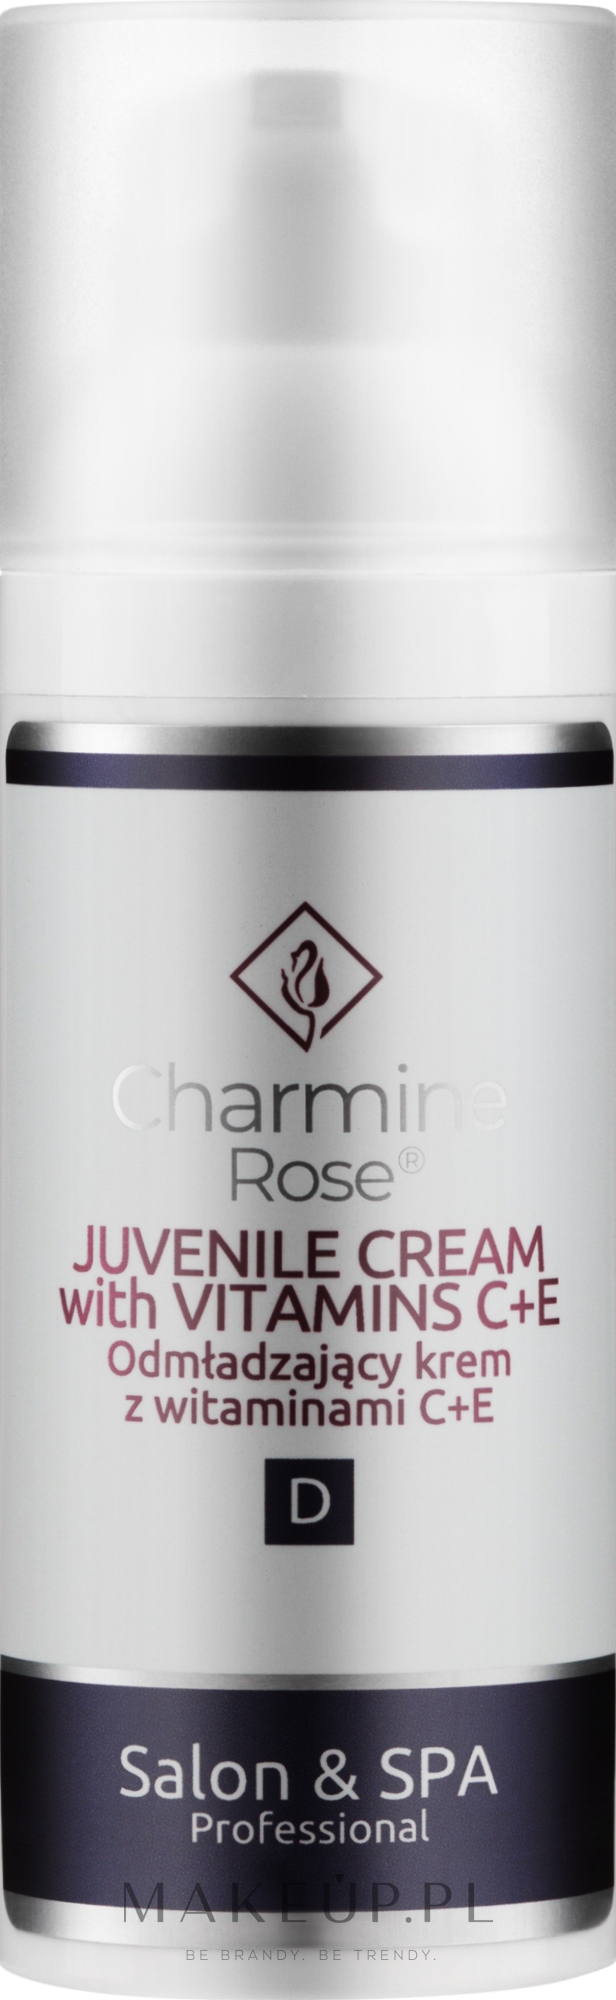 Odmładzający krem do twarzy z witaminami C+E - Charmine Rose Salon & SPA Professional Juvenile Cream With Vitamins C + E — Zdjęcie 50 ml